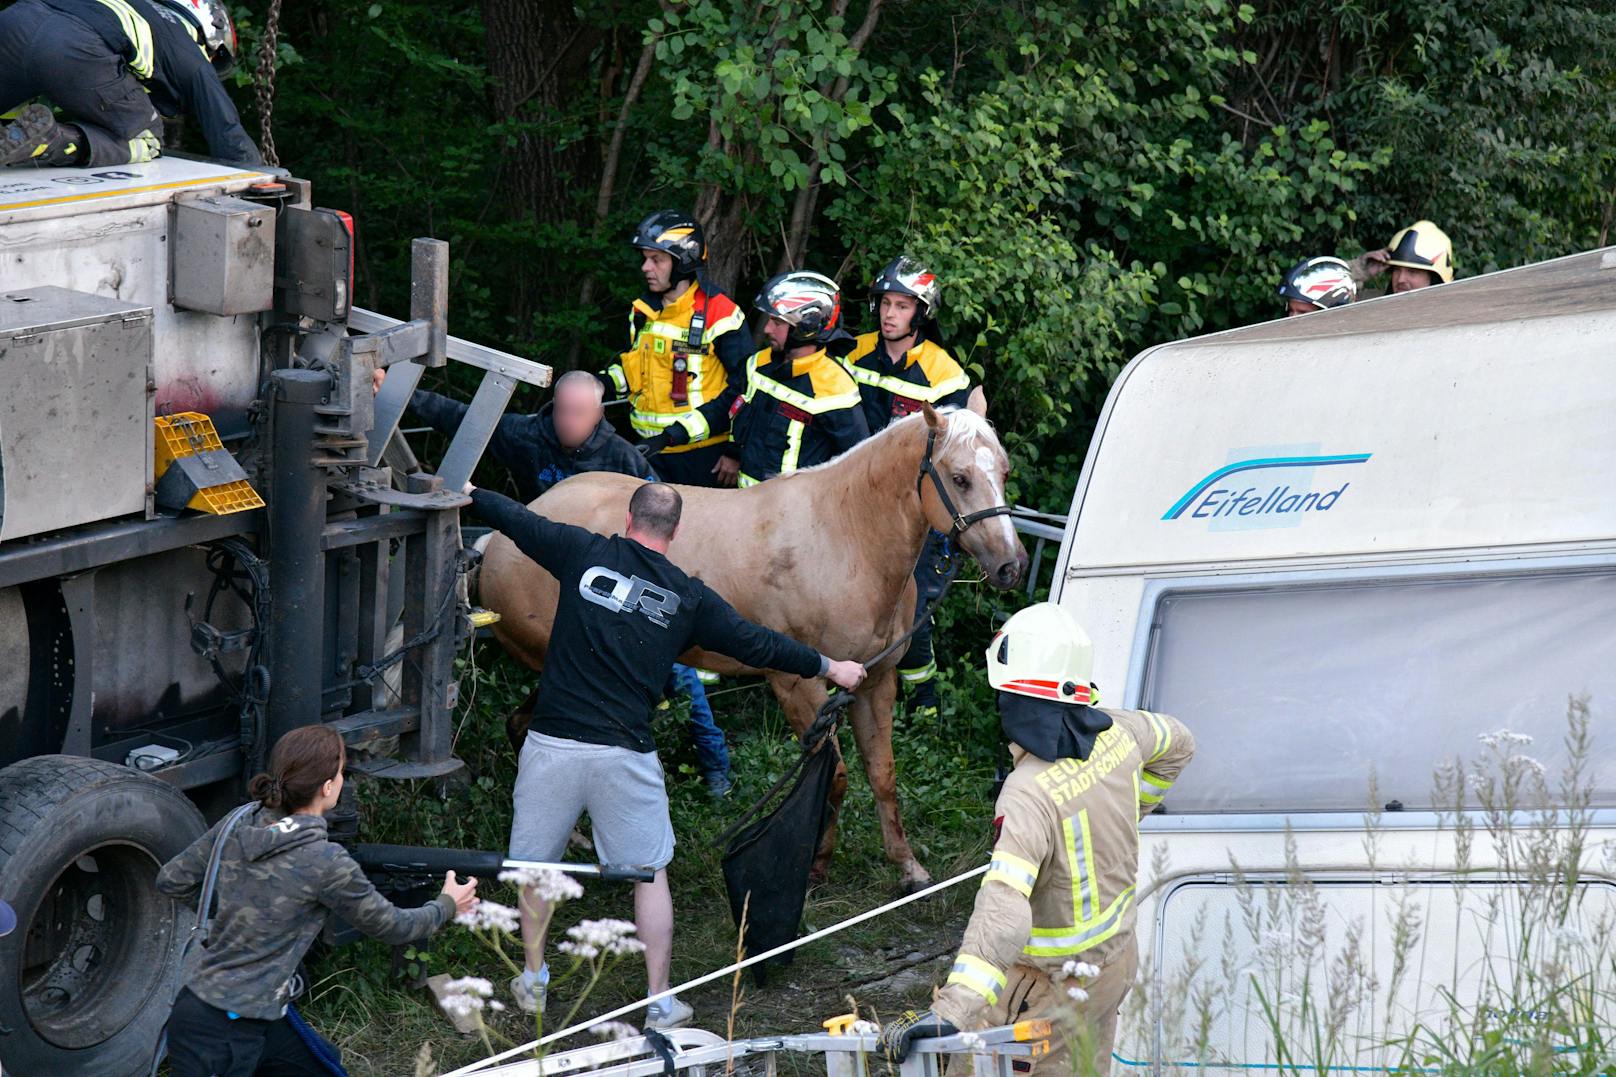 Pferdetransporter kippt auf A12 um – Turnierpferde verletzt